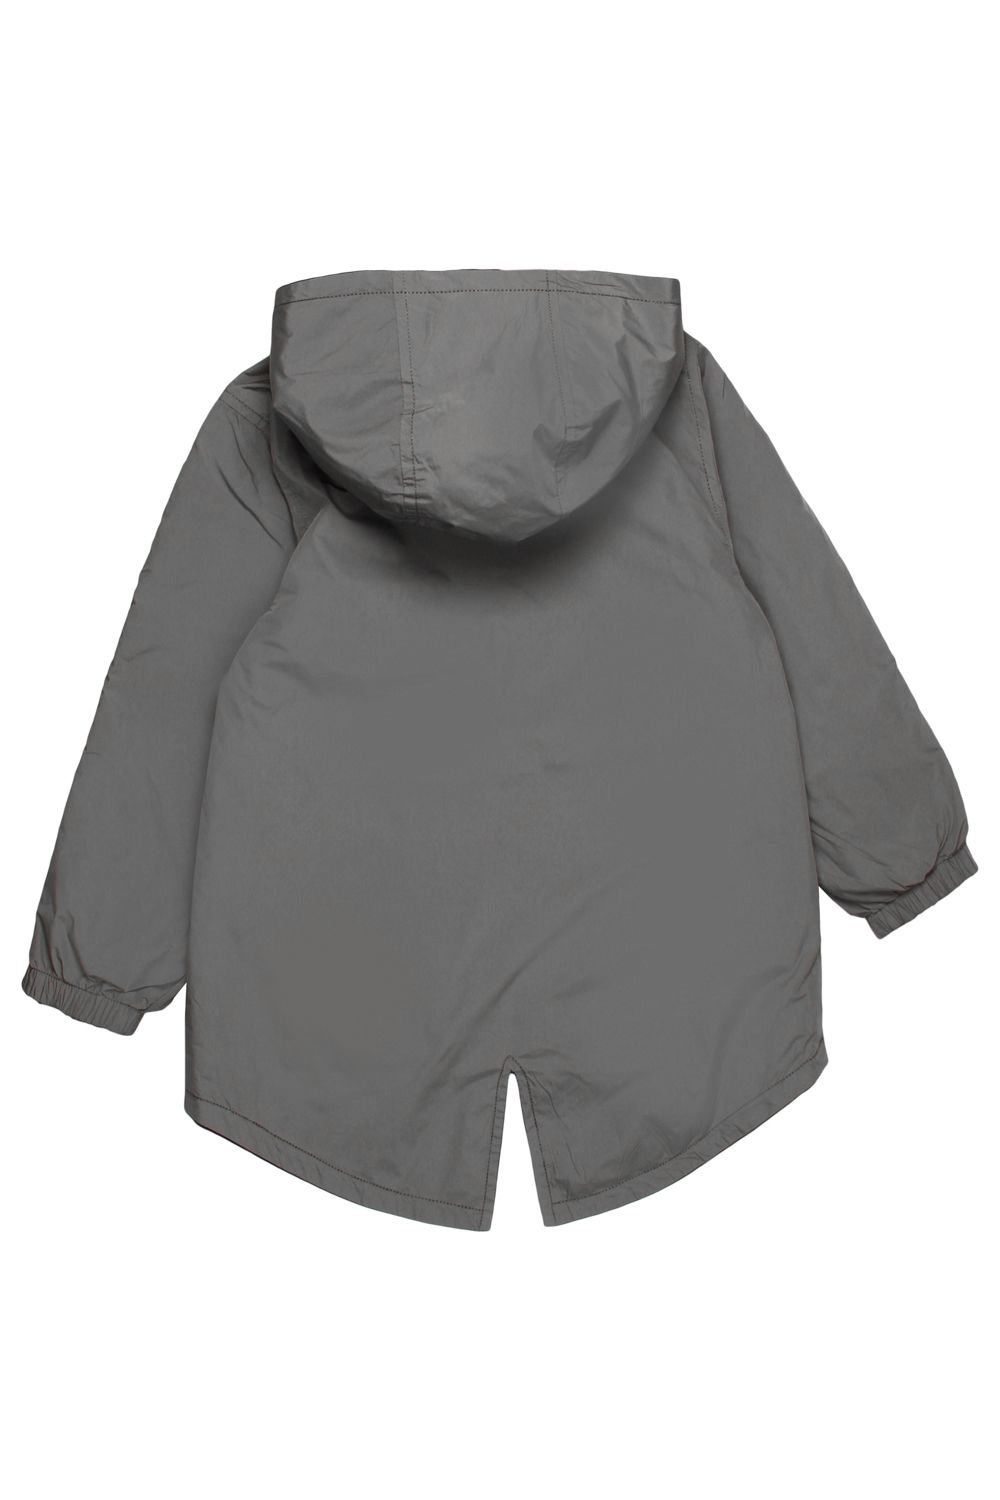 Куртка Noble People, размер 92, цвет серый - фото 3